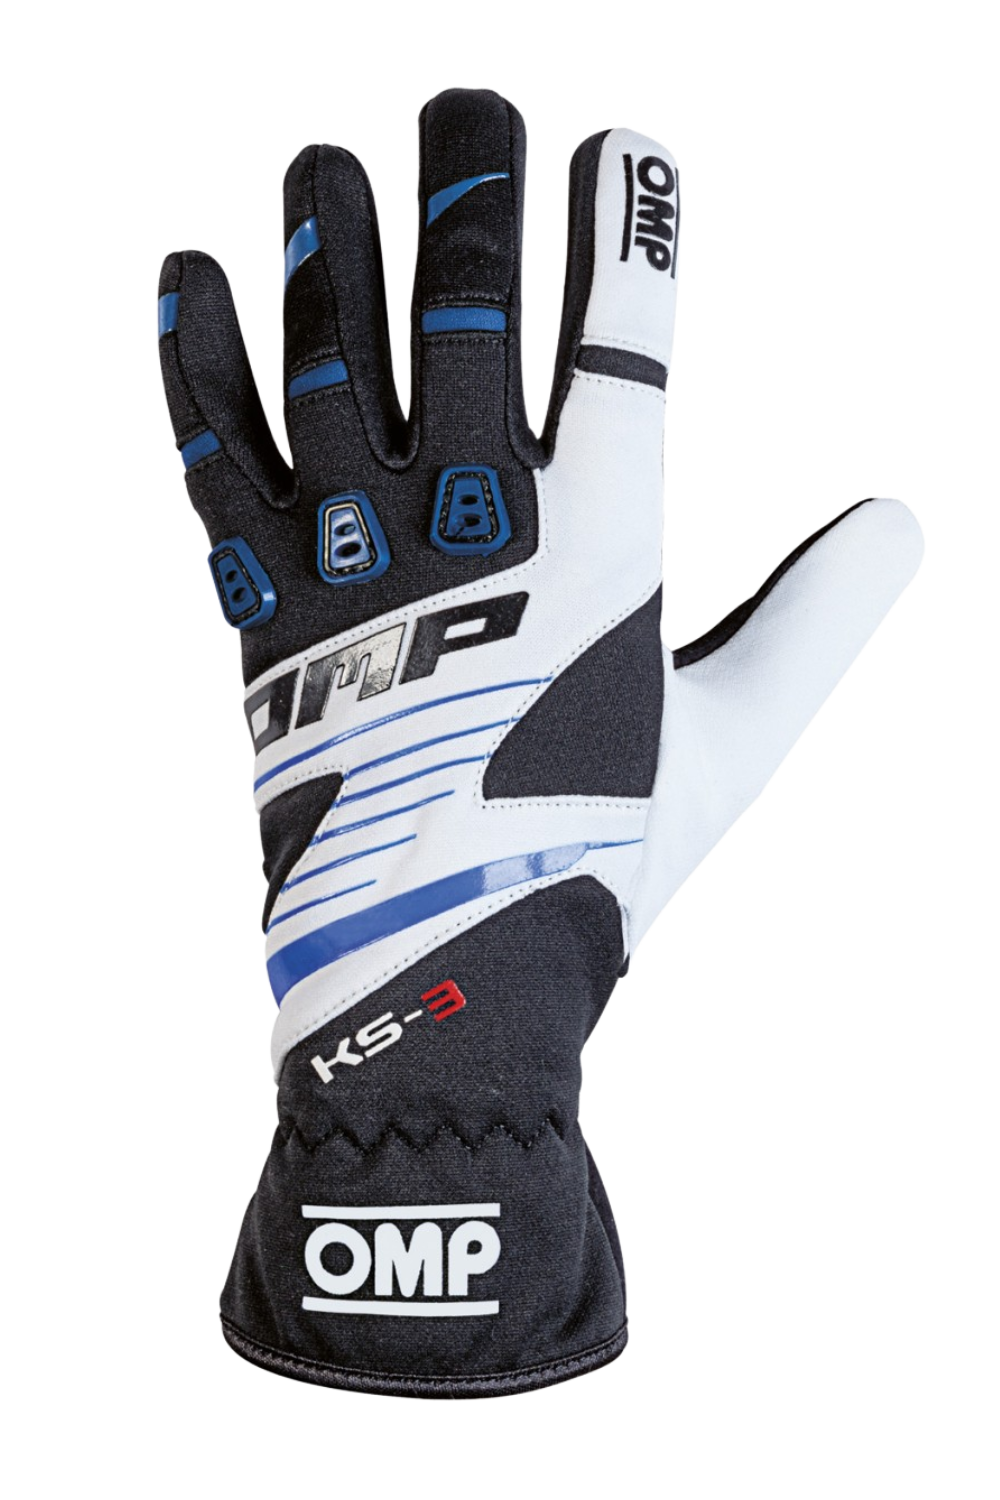 OMP KS-3 Handschoenen Zwart/Blauw/Wit